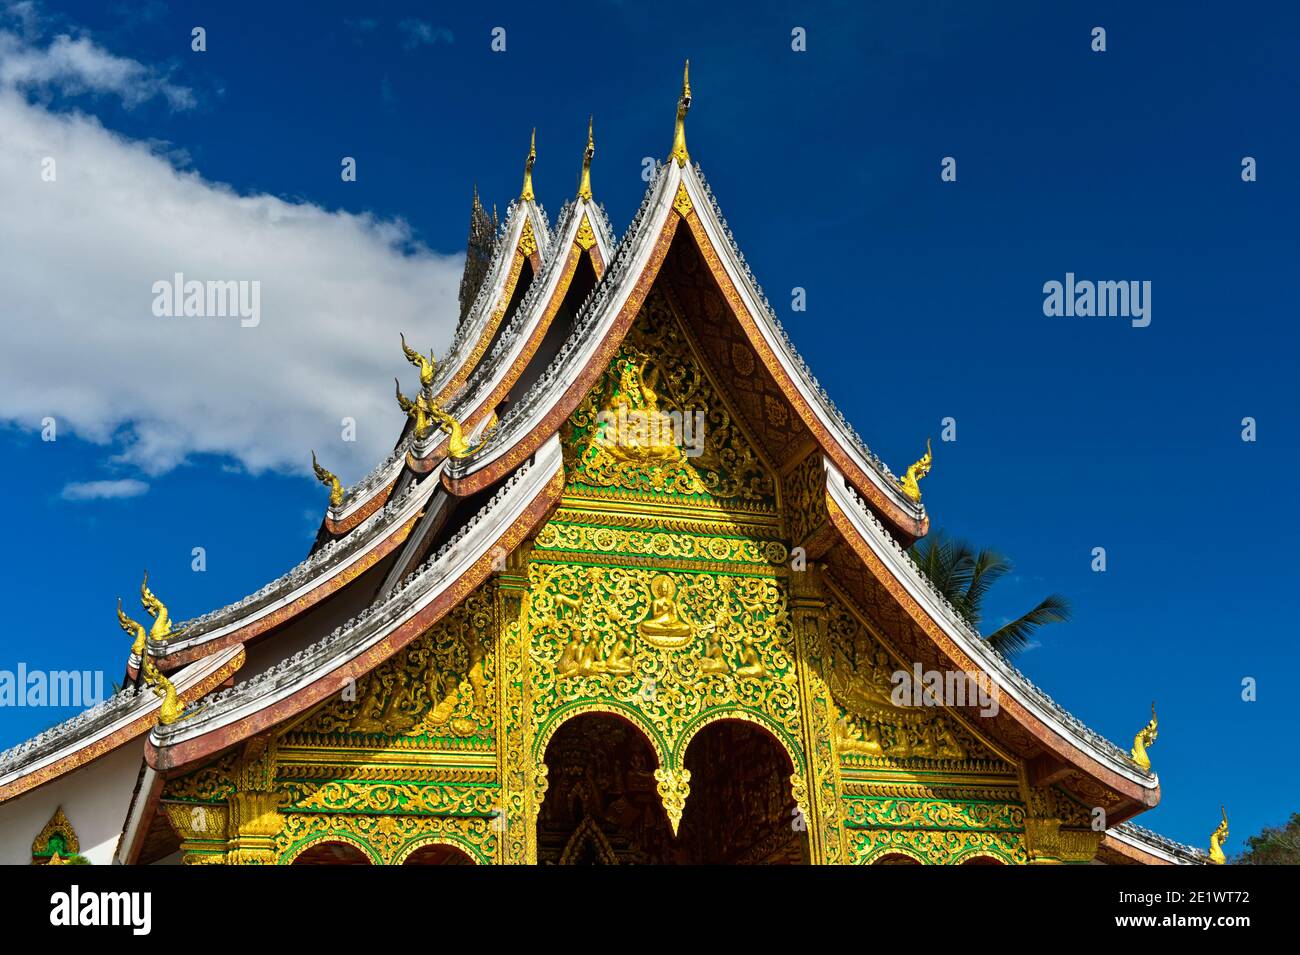 Toit à plusieurs niveaux de style thaïlandais orné de finals naga stylisés aux extrémités du toit, temple Haw Pha Bang, Luang Prabang, Laos Banque D'Images